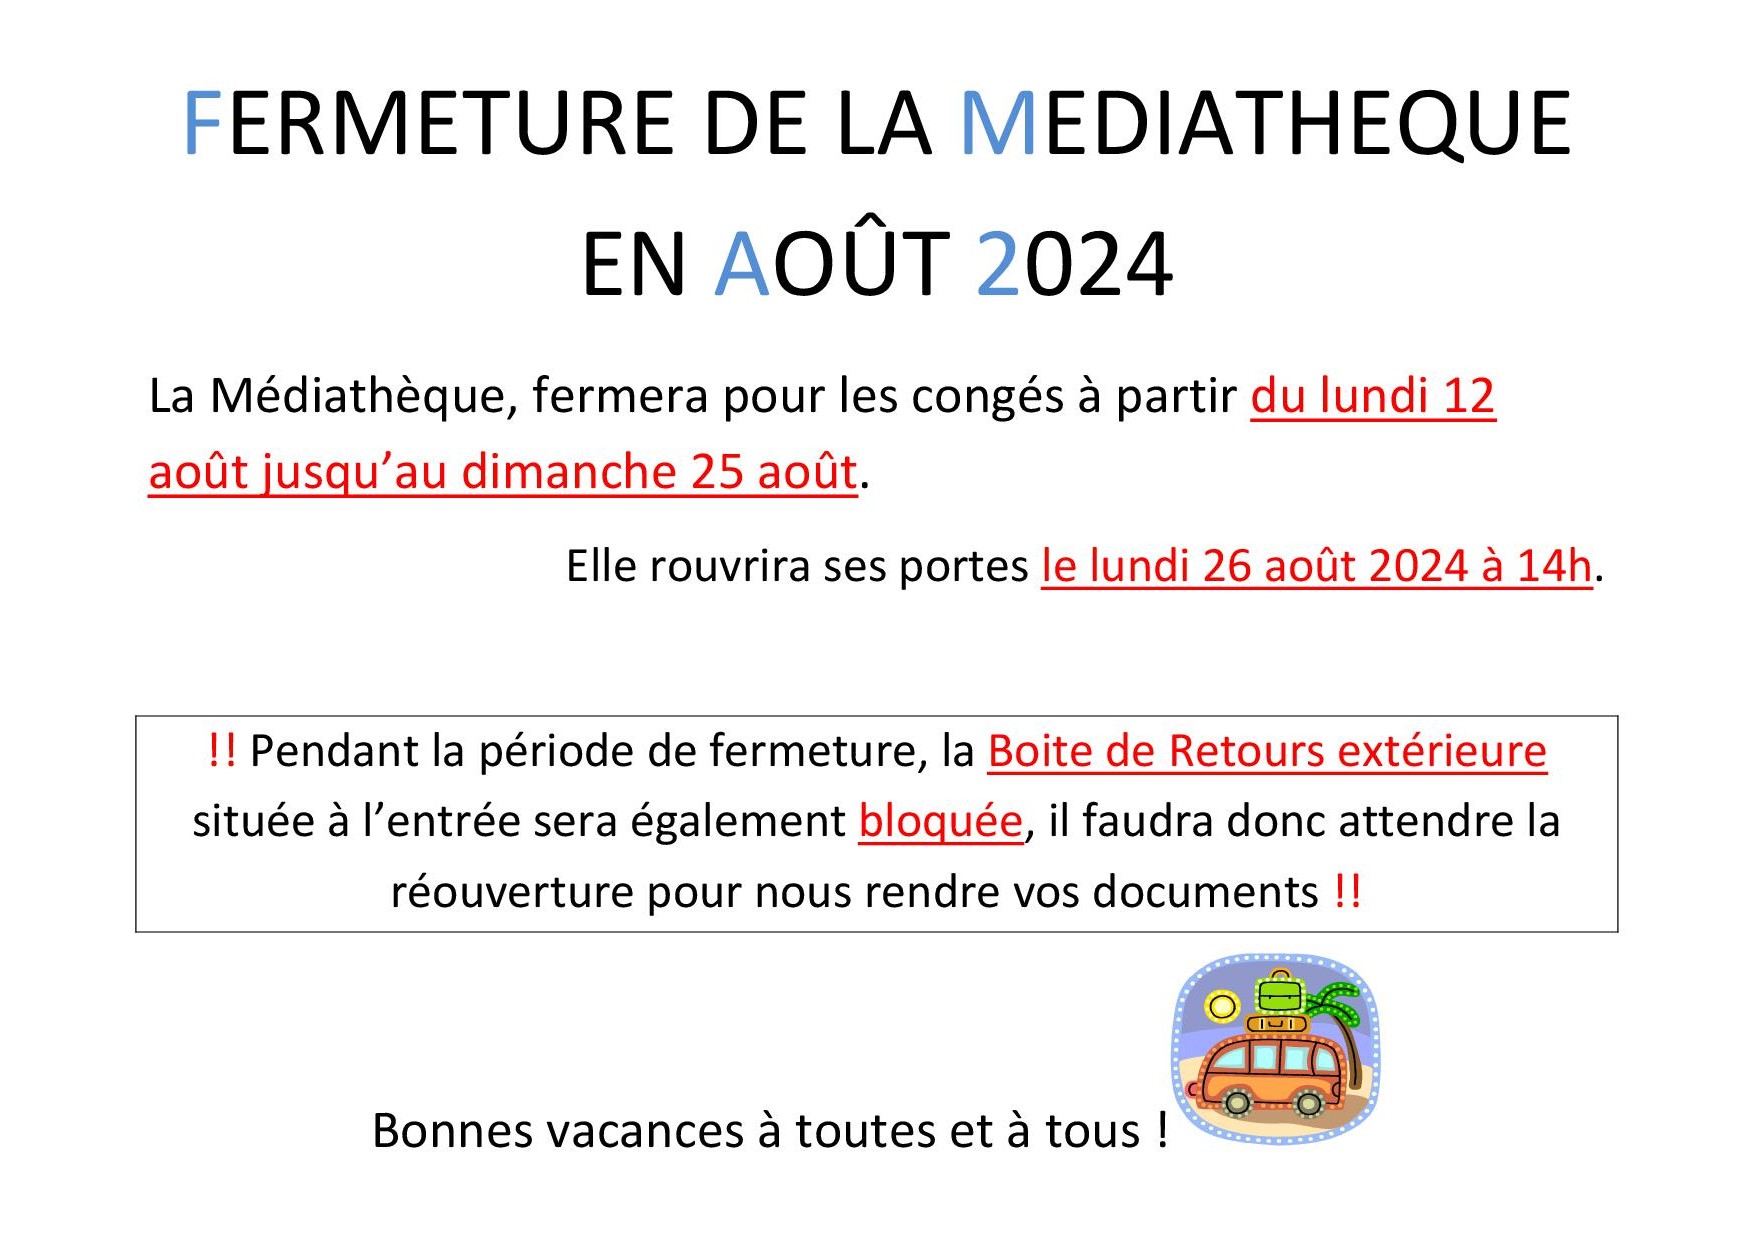 FERMETURE DE LA MEDIATHEQUE EN AOUT 2024